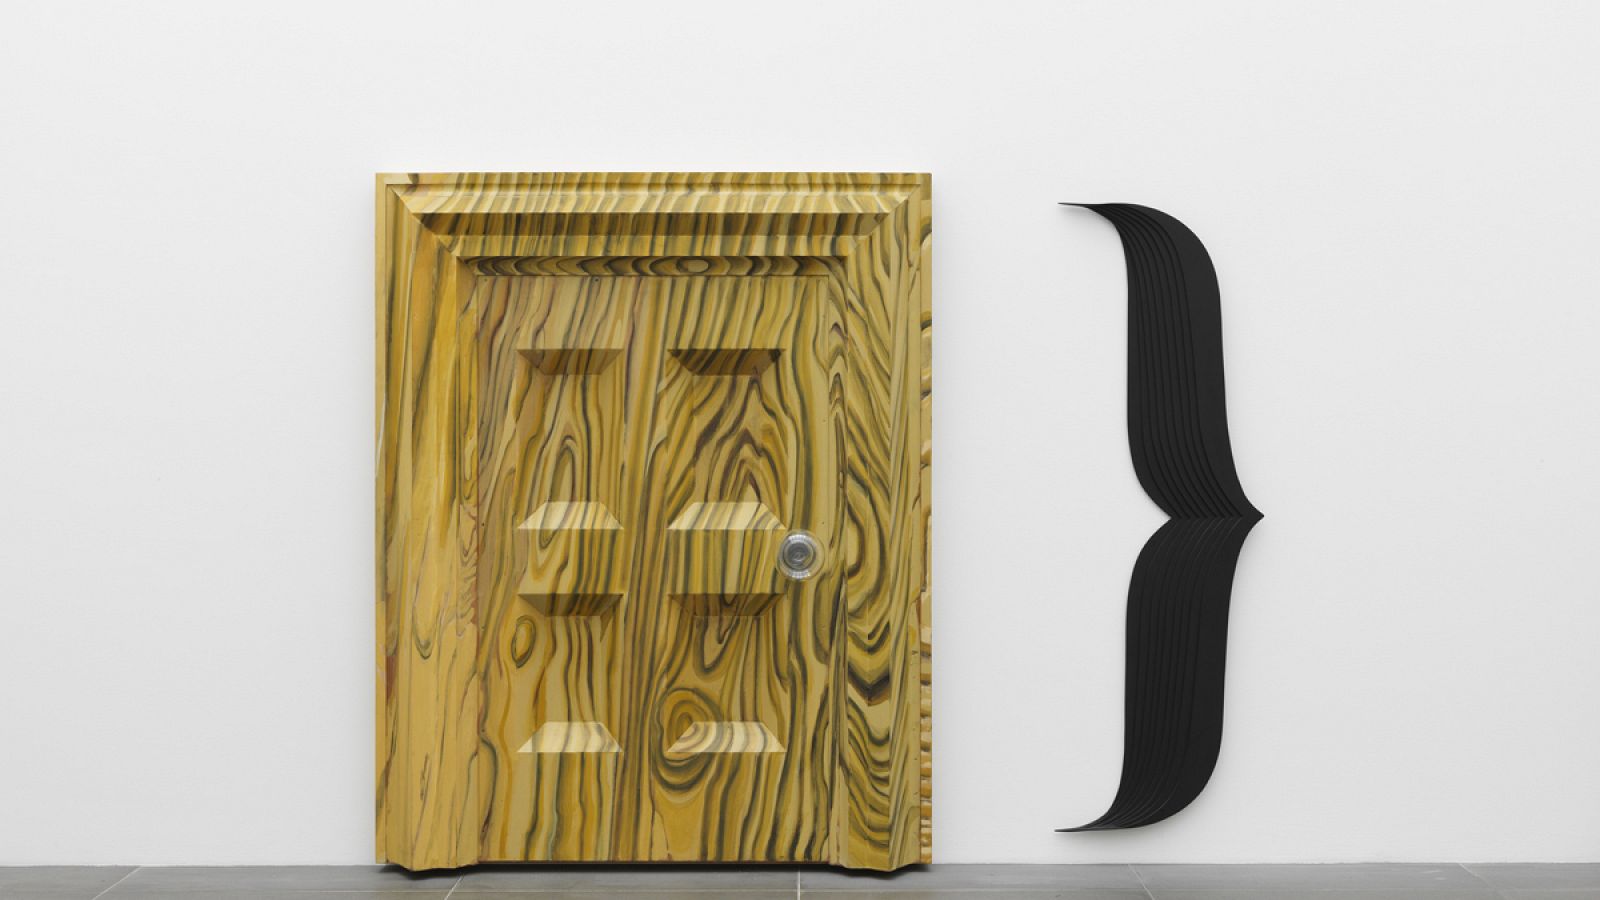 'Puerta' 1983¿84. Acrílico y laca sobre madera, vidrio y metal. Coleccción Kerstin Hiller y Helmut Schmelzer. 